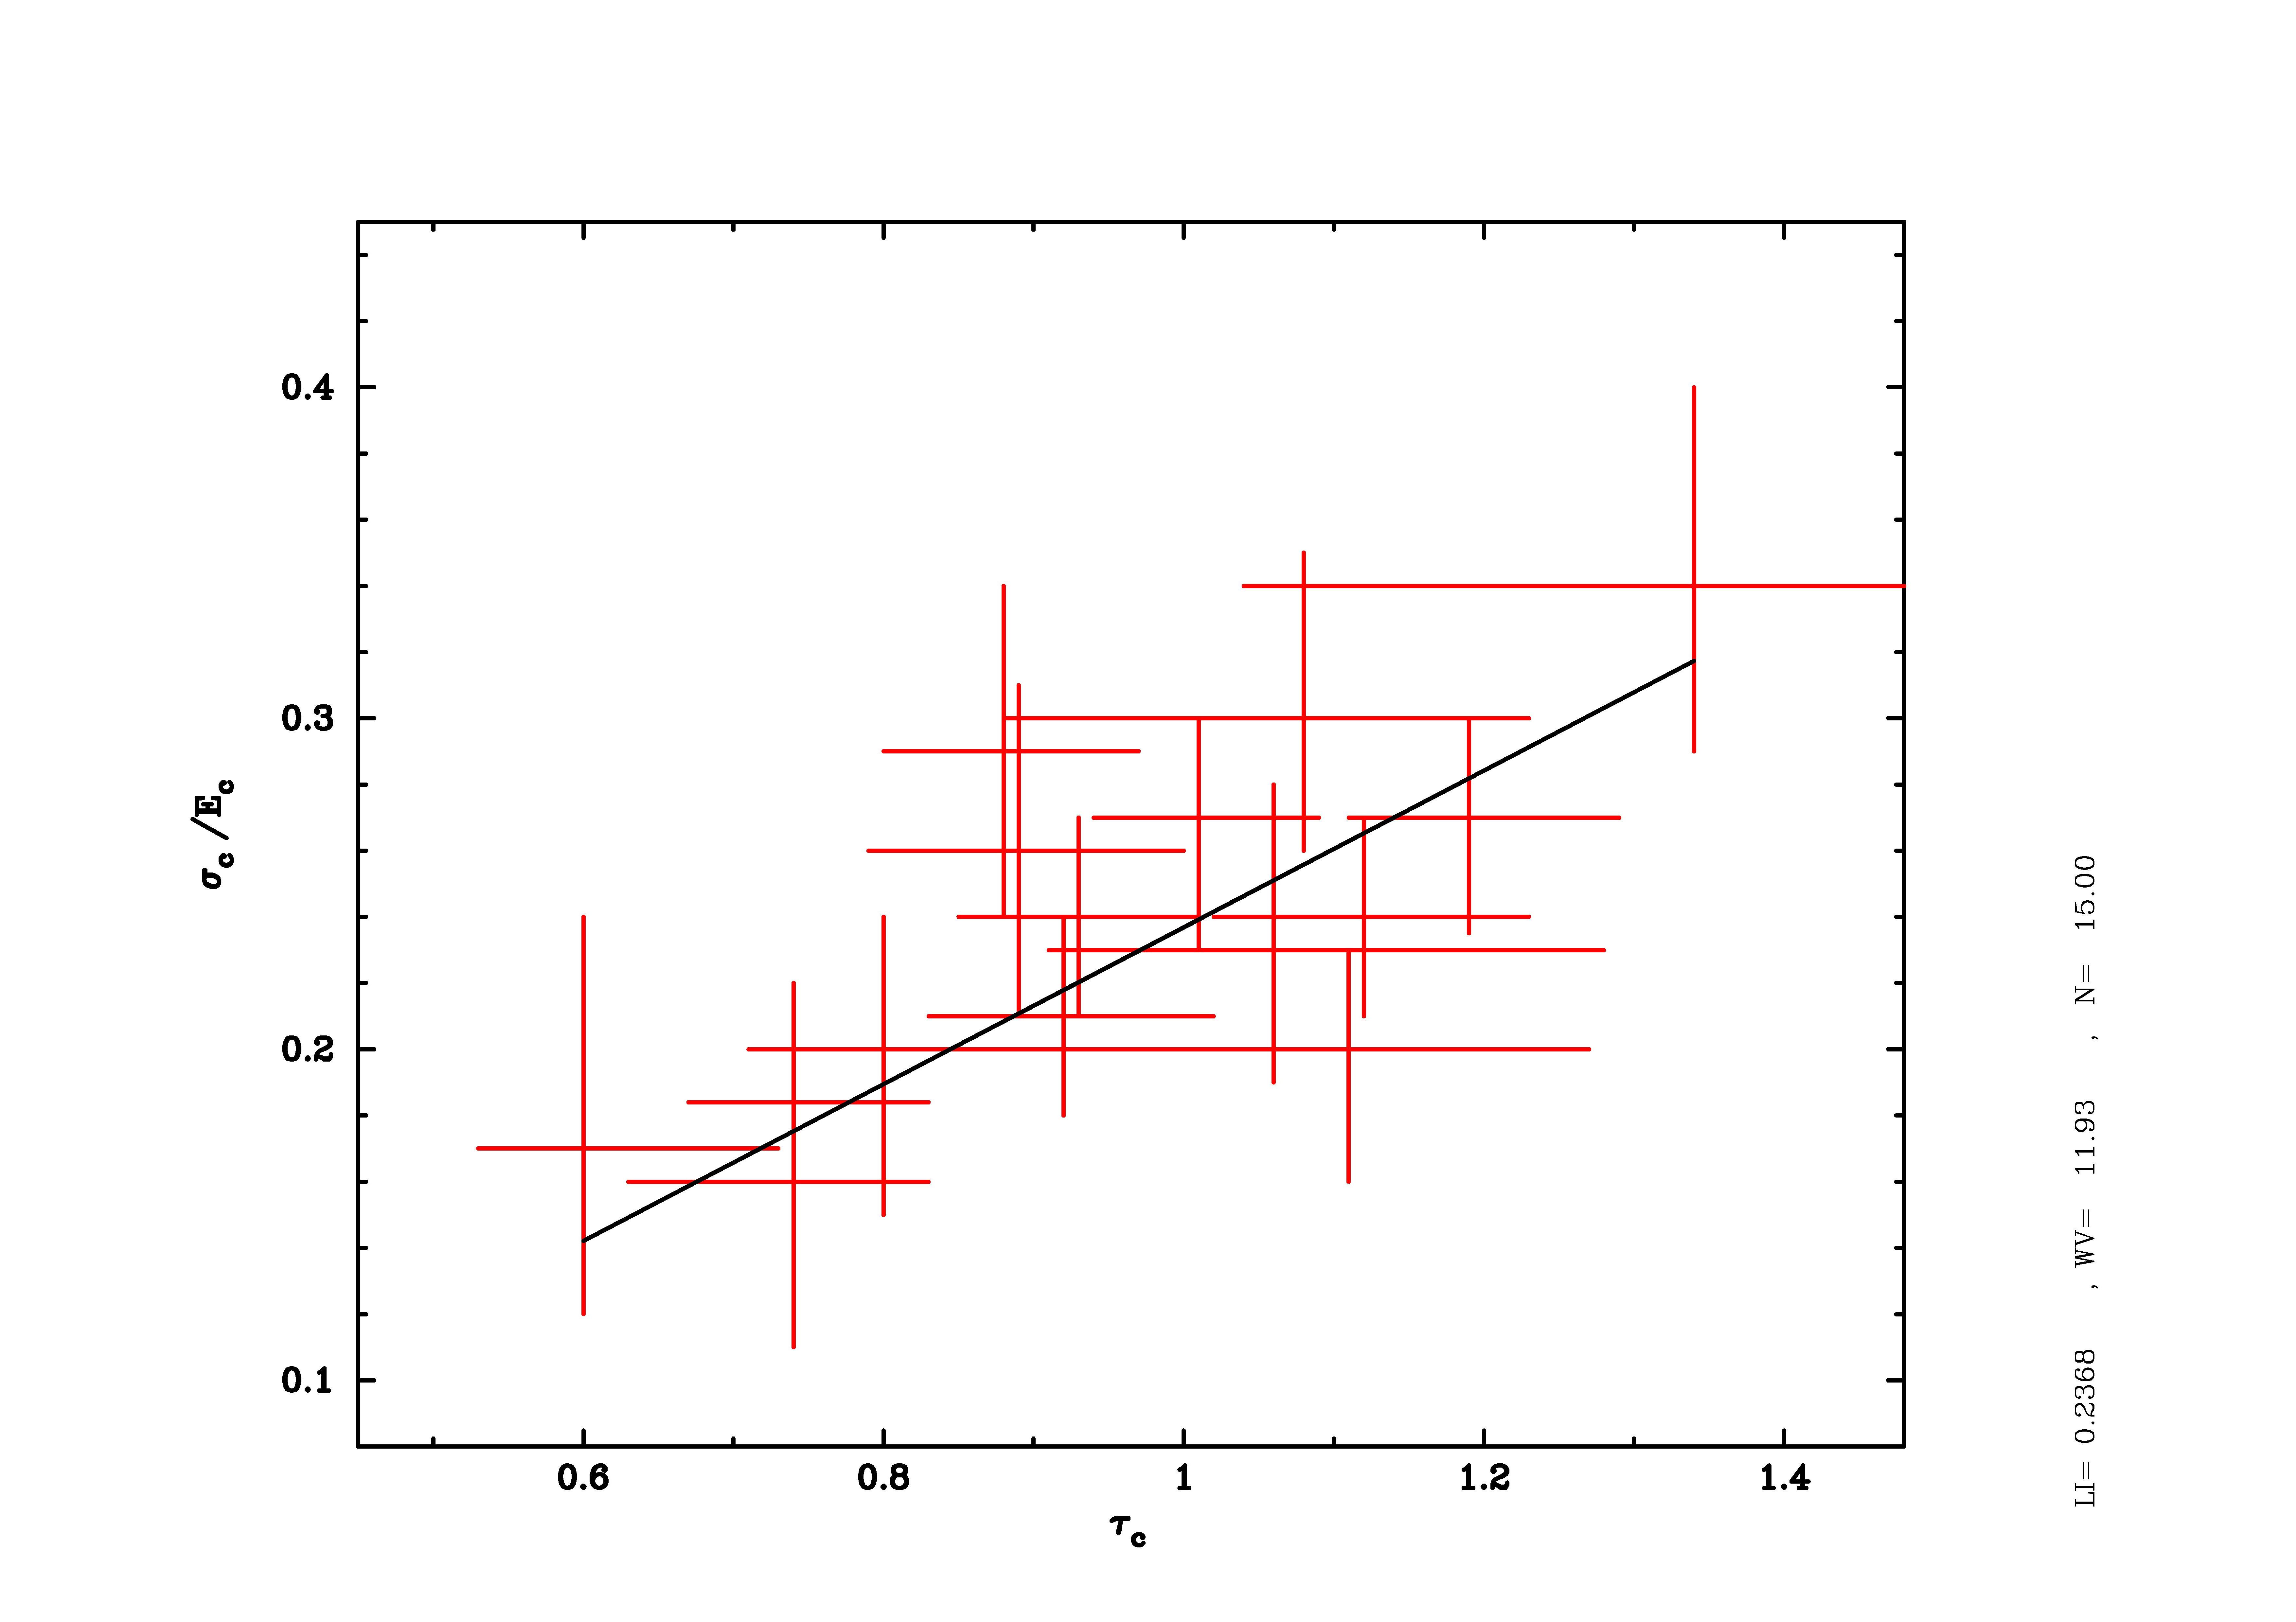 Fig. 1. Variación de la anchura relativa de la CRSF (¾c/Ec) con la profundidad óptica a partir de datos de RXTE para la campaña de observación anual del sistema estudiado en esta tesis. La línea continua representa el ajuste de la correlación lineal entre ambos parámetros que es consistente con los resultados obtenidos por Coburn et al. (2002) y por Kreykenbohm et al. (2004).